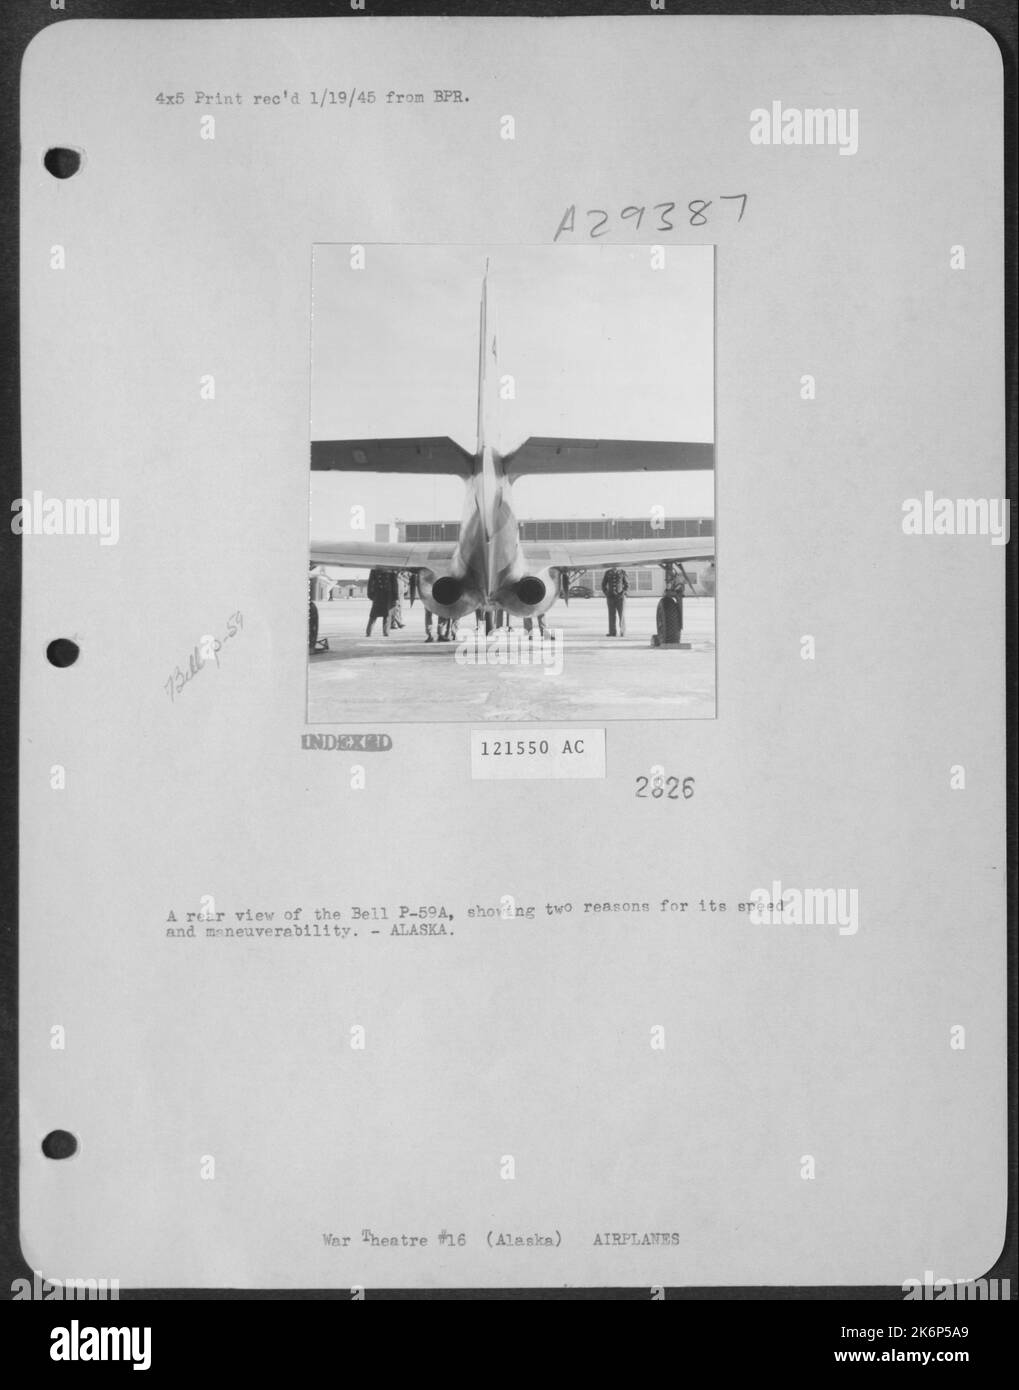 Una vista posteriore della Bell P-59A, che mostra due motivi per la sua velocità e manovrabilità.-ALASKA. Foto Stock